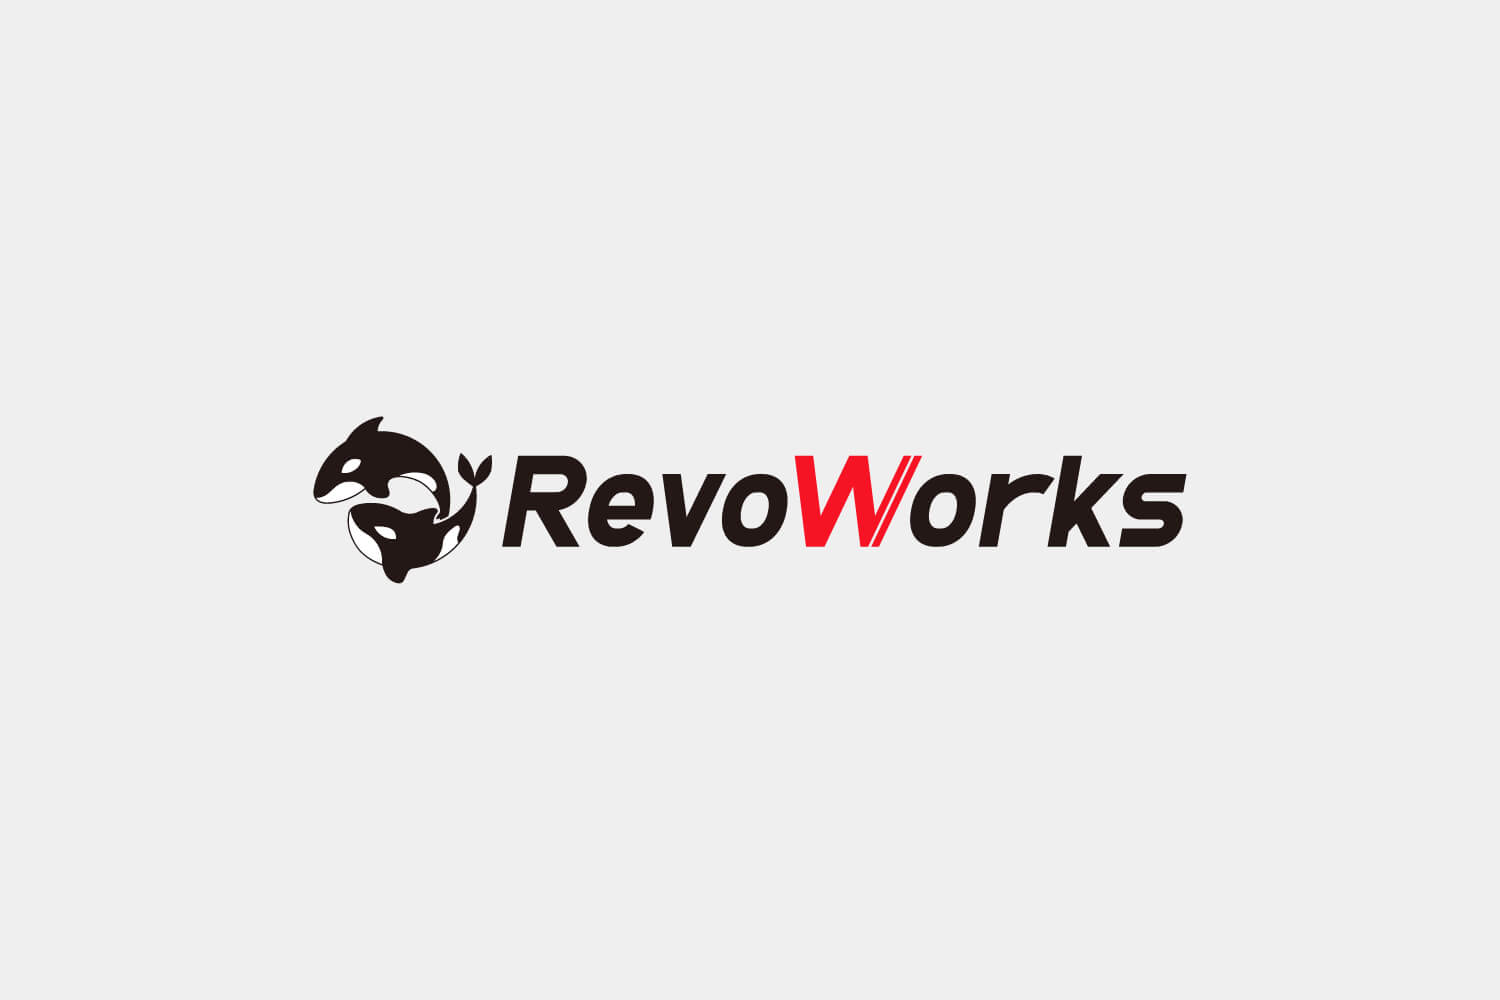 Revoworks News